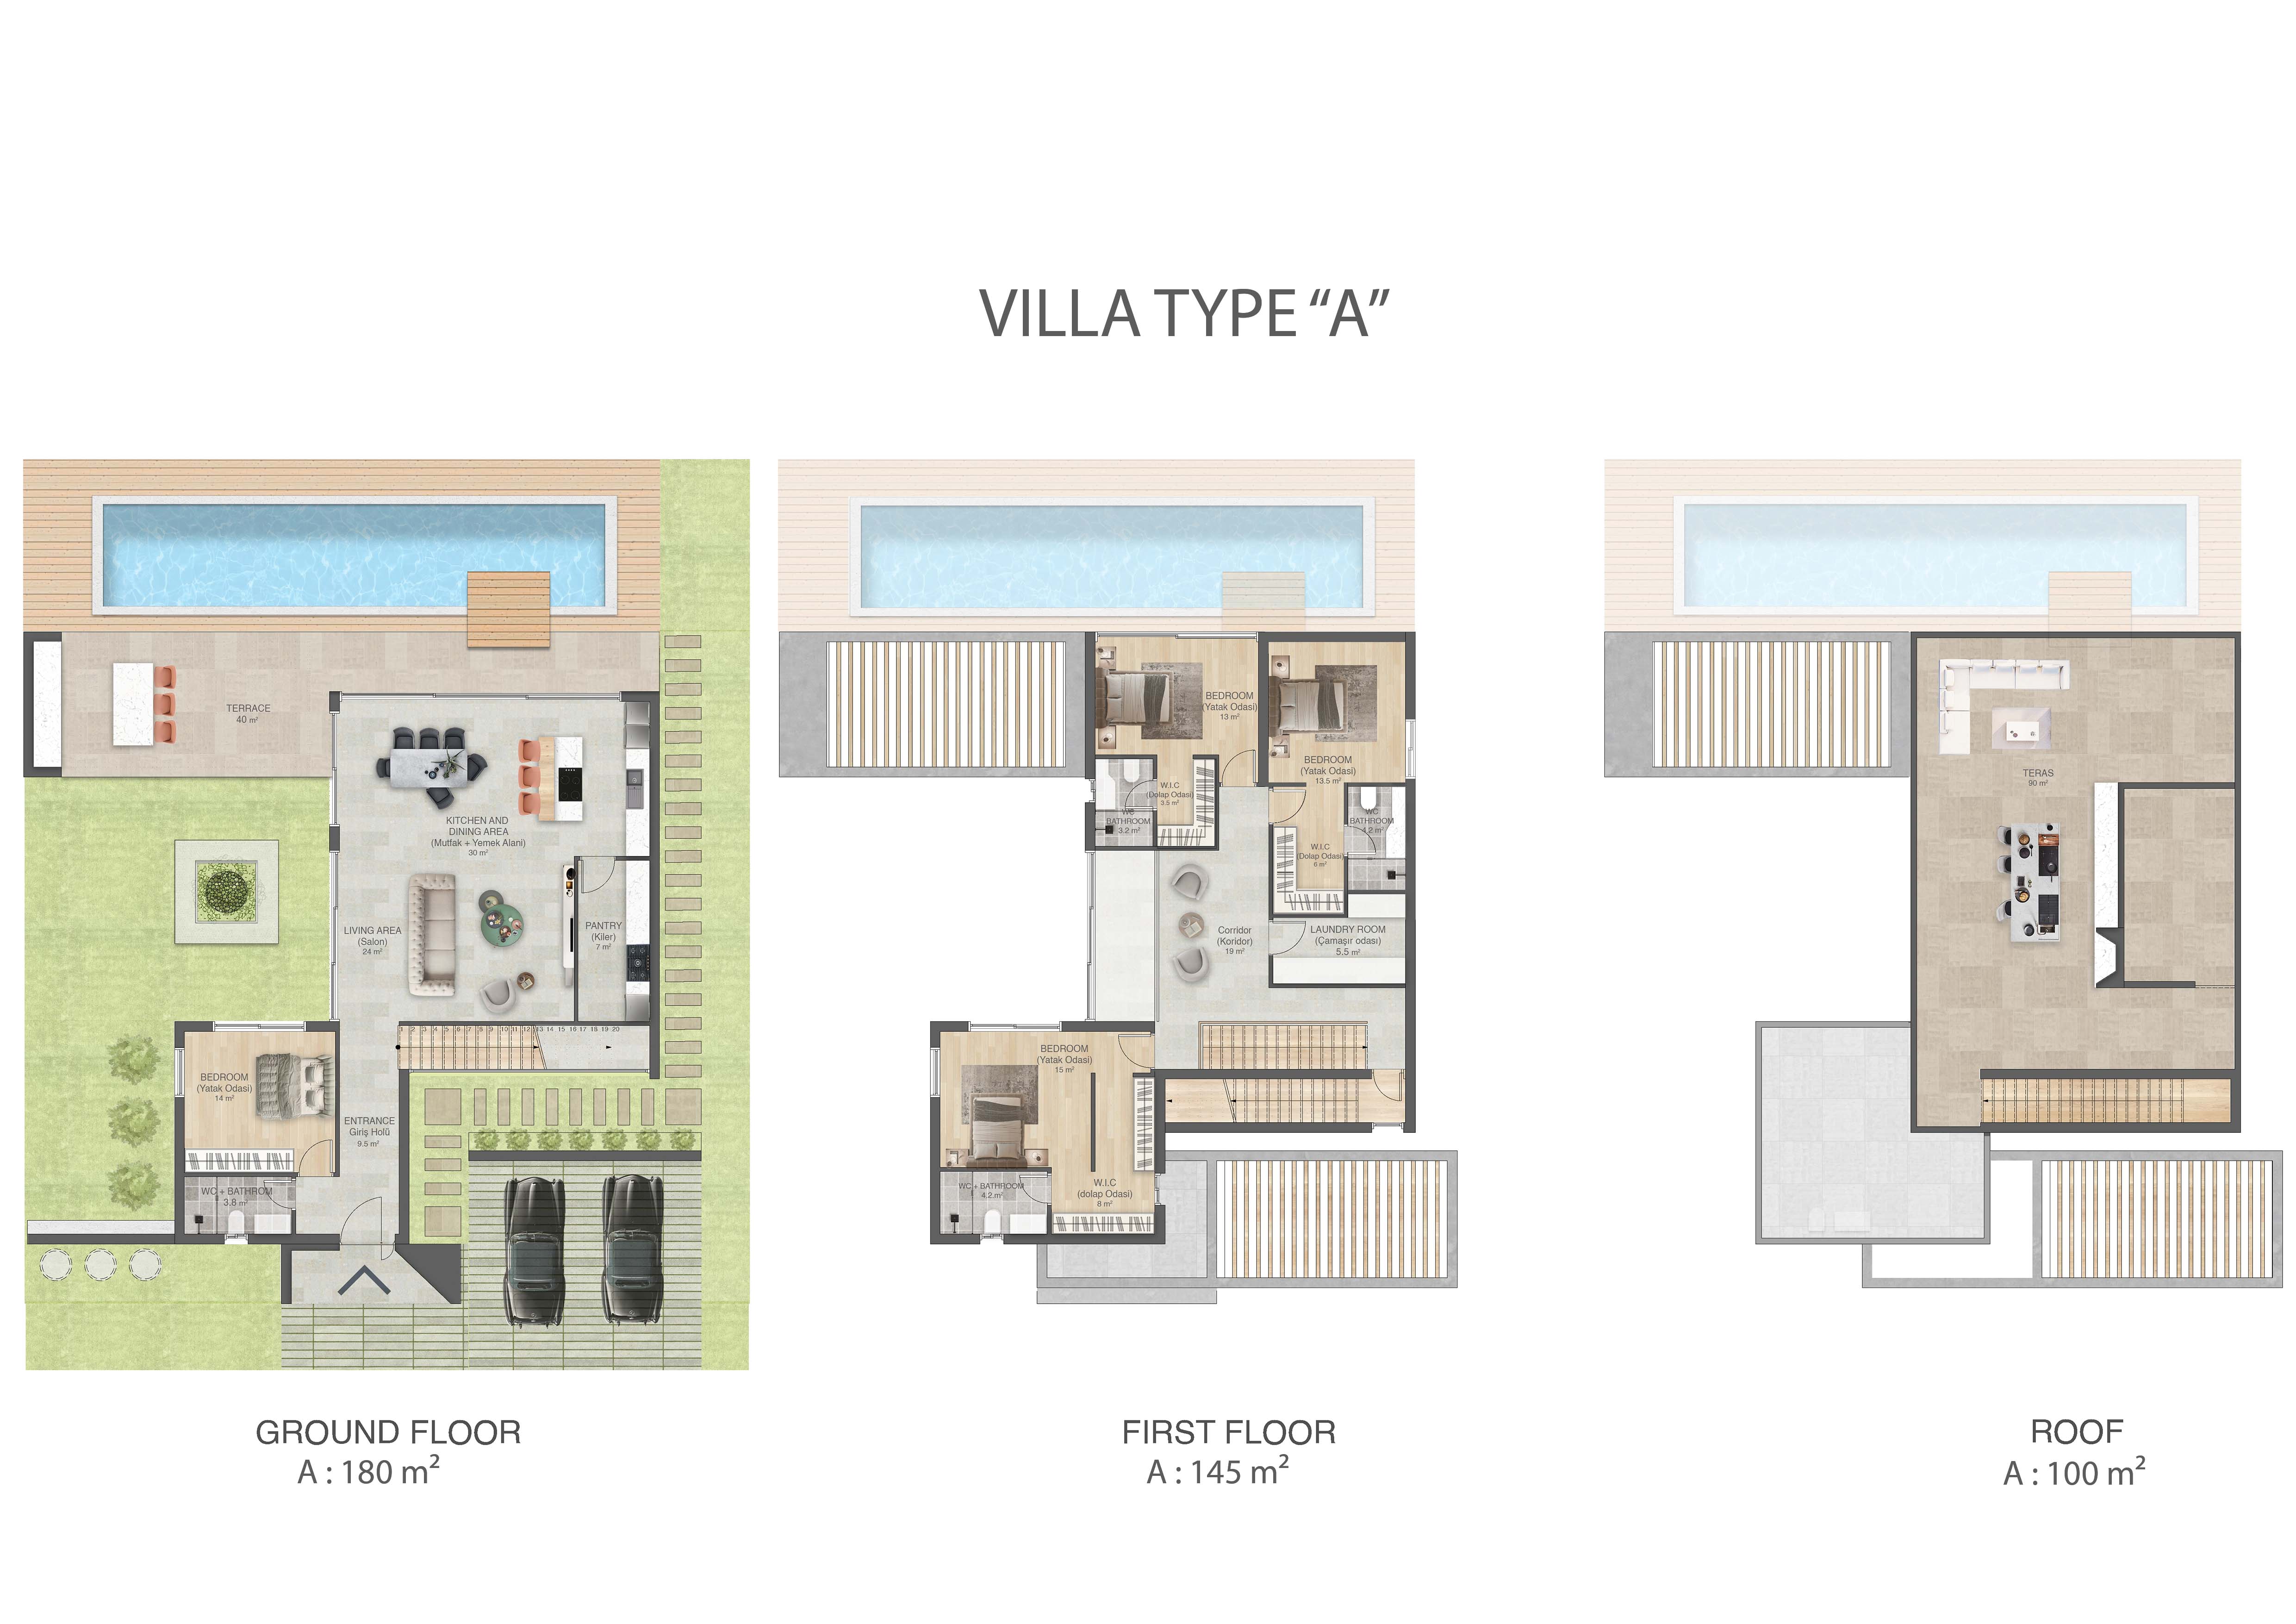 ویلا نوع A با ۴ اتاق خواب و ۱ اتاق نشیمن | پروژه اکوا